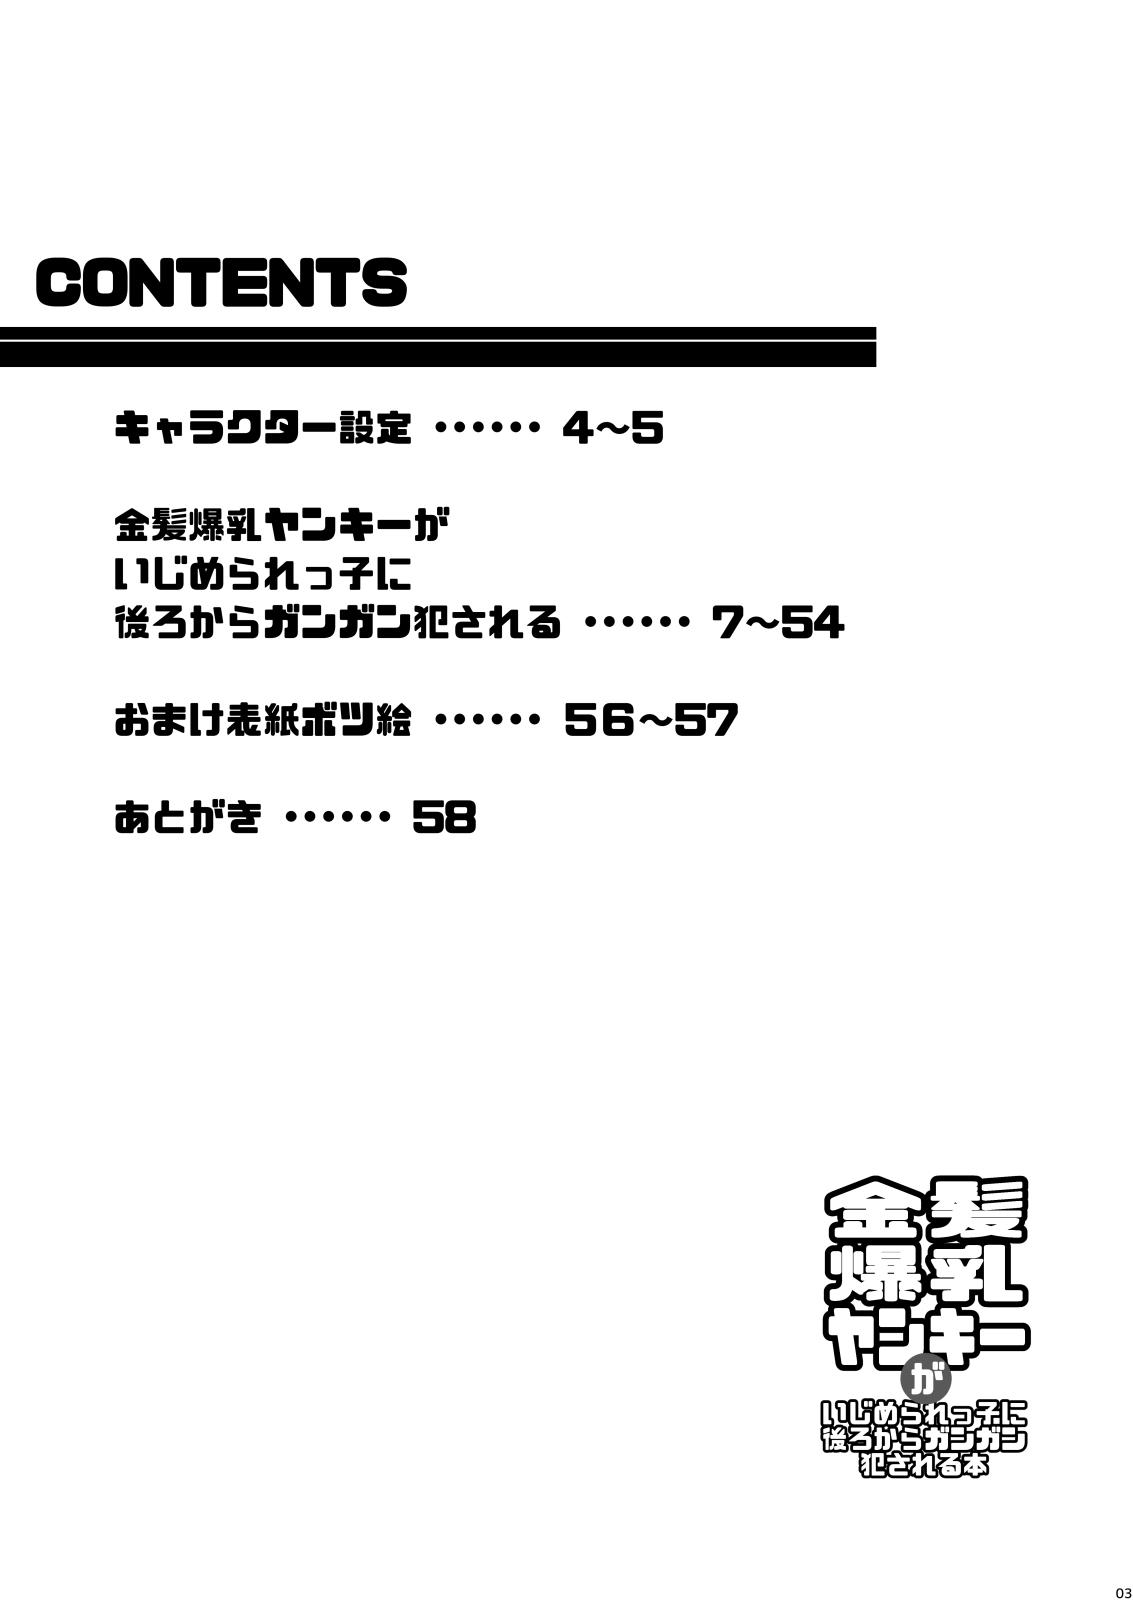 Foda Kinpatsu bakunyū yankī ga ushirokara gangan okasa reru hon - Original Passivo - Page 3